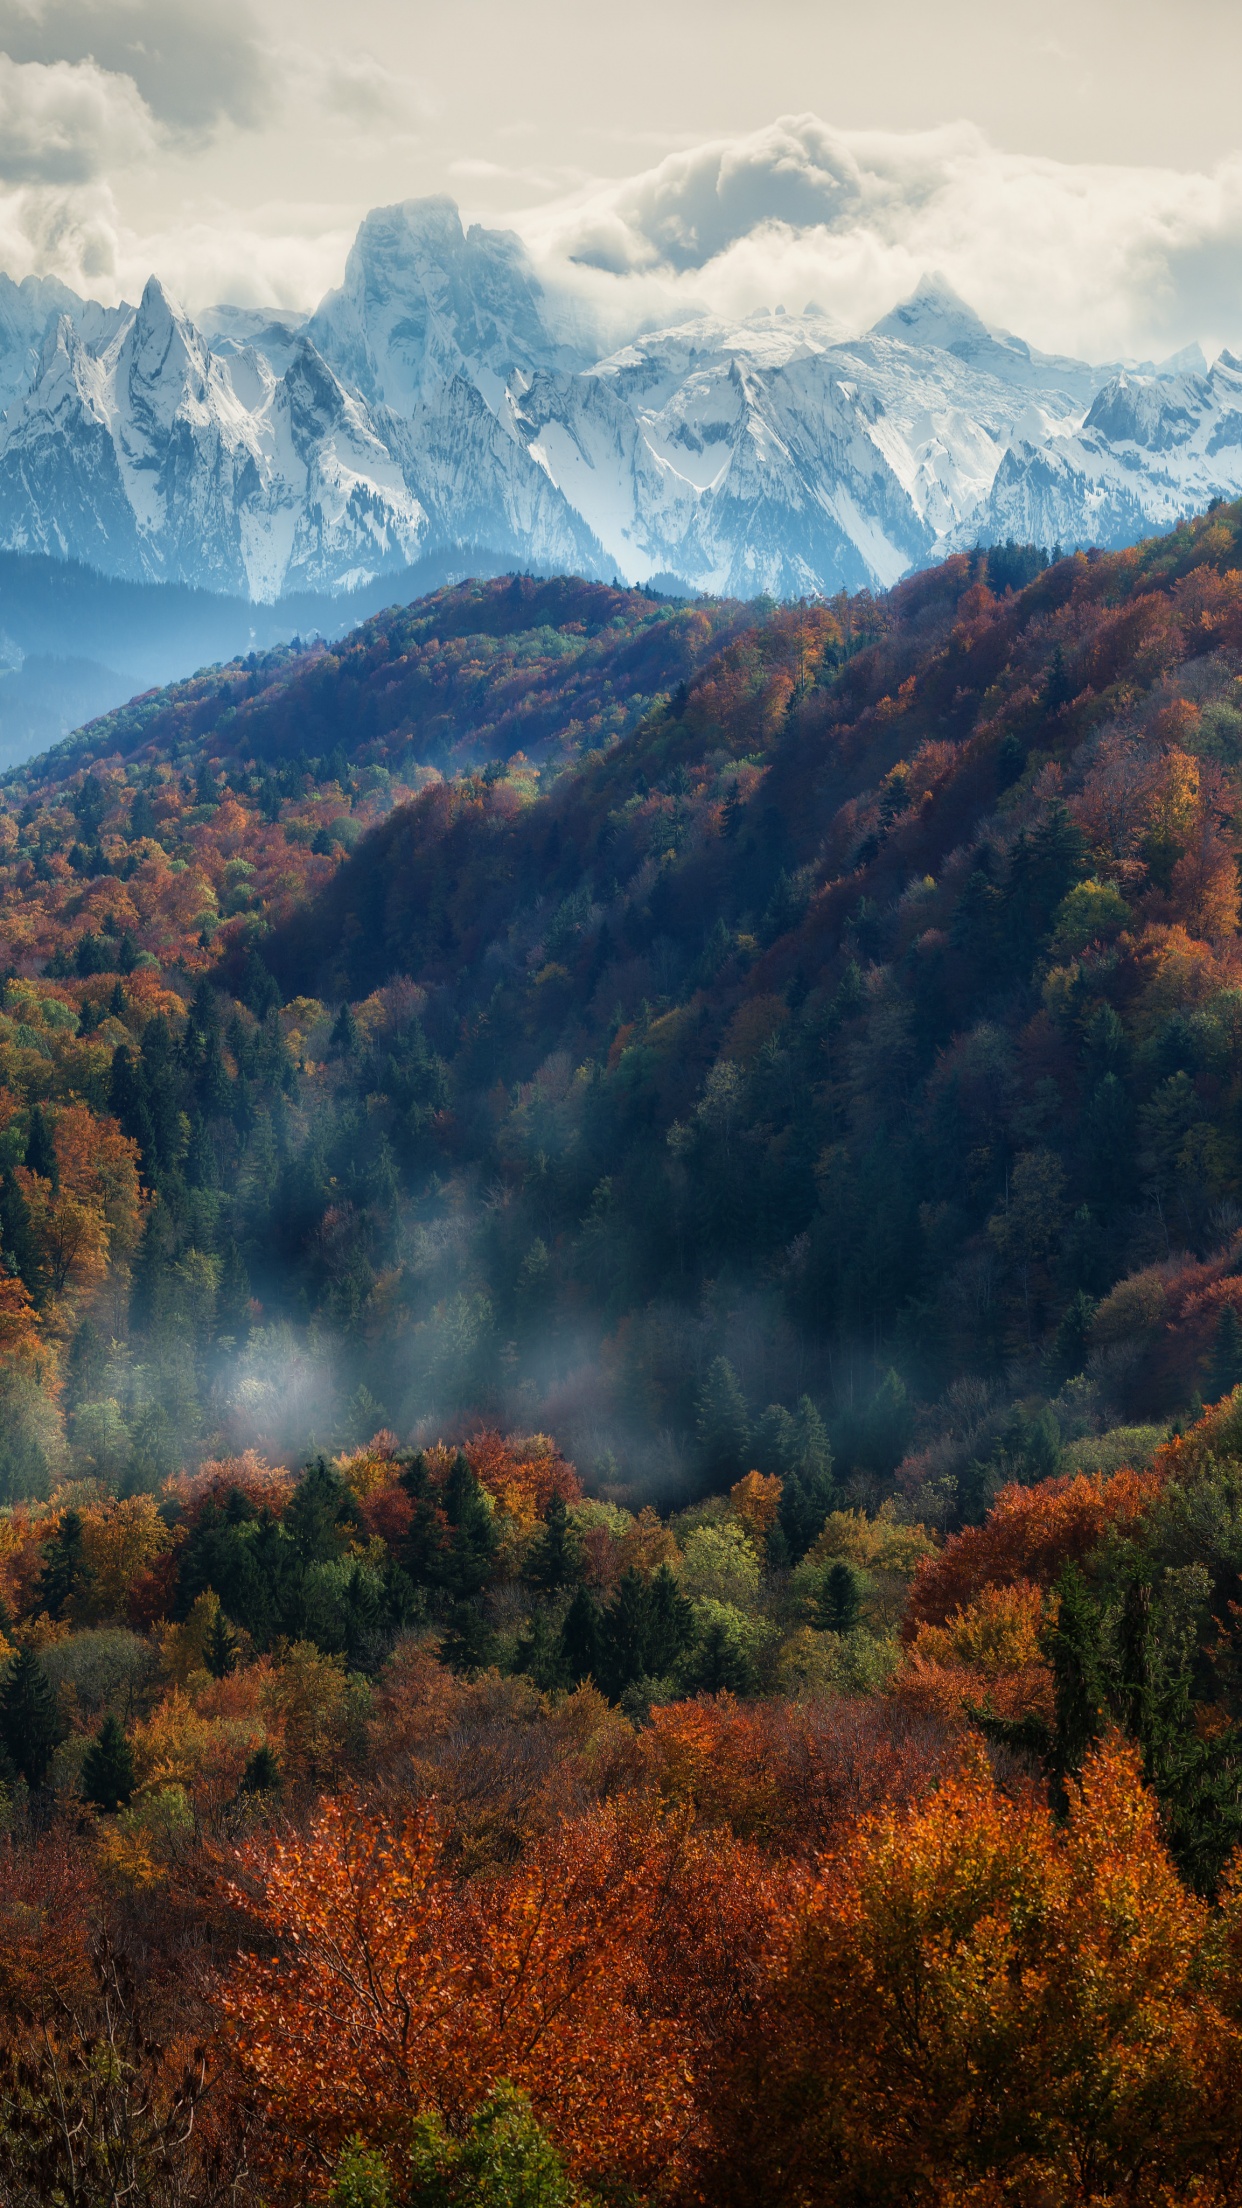 Những ngọn núi Alps là một trong những công trình thiên nhiên tuyệt đẹp nhất trên thế giới, và bạn có thể mang nét đẹp này vào màn hình điện thoại của bạn với một bức ảnh nền. Tìm kiếm trong số hàng trăm tùy chọn và chọn một bức ảnh để cất giữ chúng vĩnh viễn trên màn hình điện thoại của bạn.